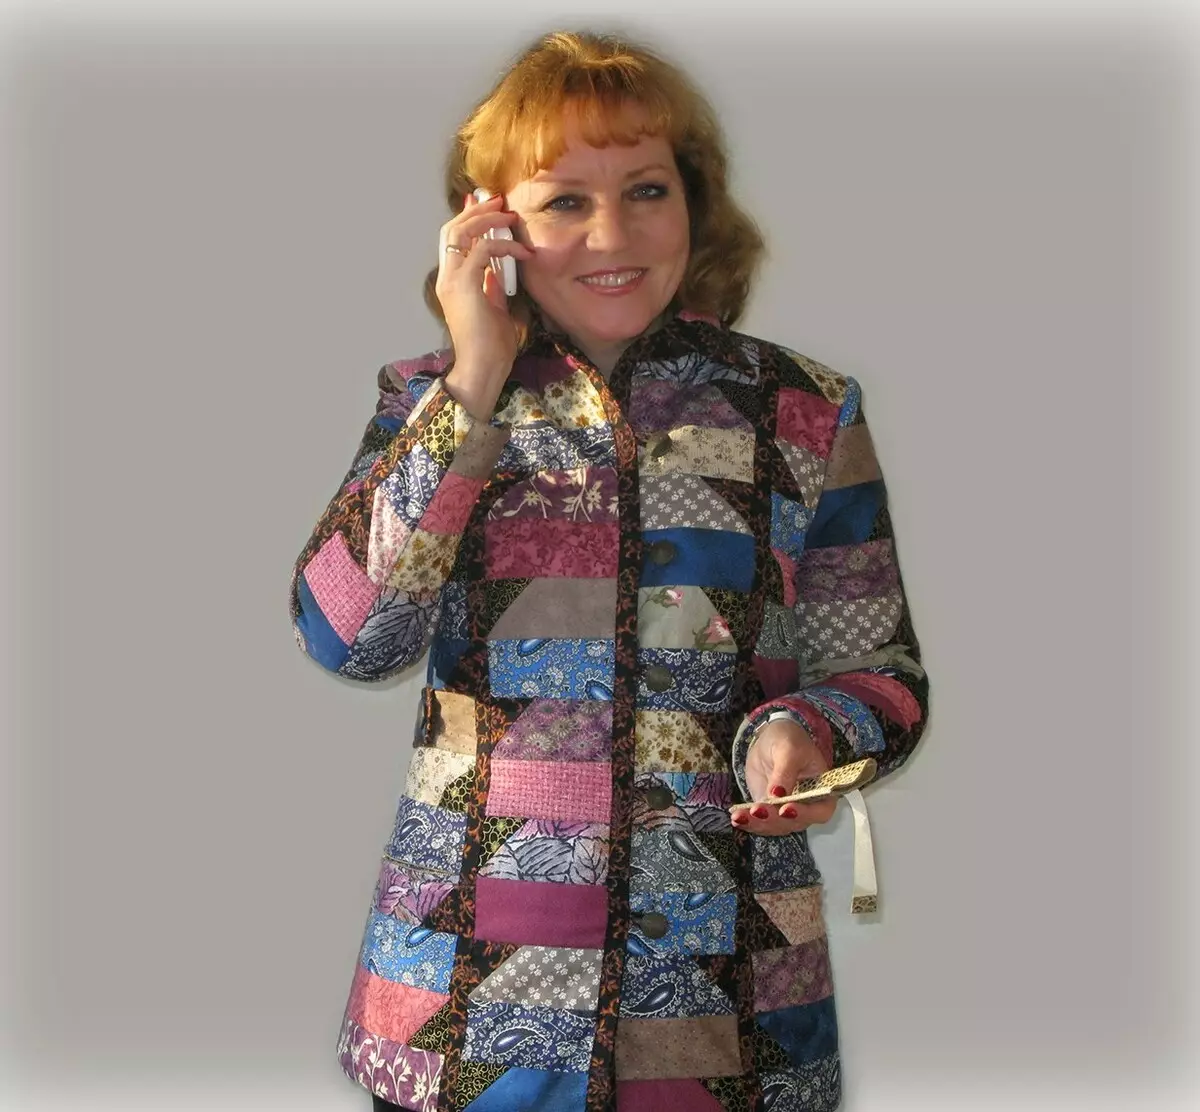 Stile BOCHO per le donne dopo 50 anni (80 foto): bastoncini per signore complete e sottili, giacche estive e altri vestiti nello stile di boho-chic 3659_68